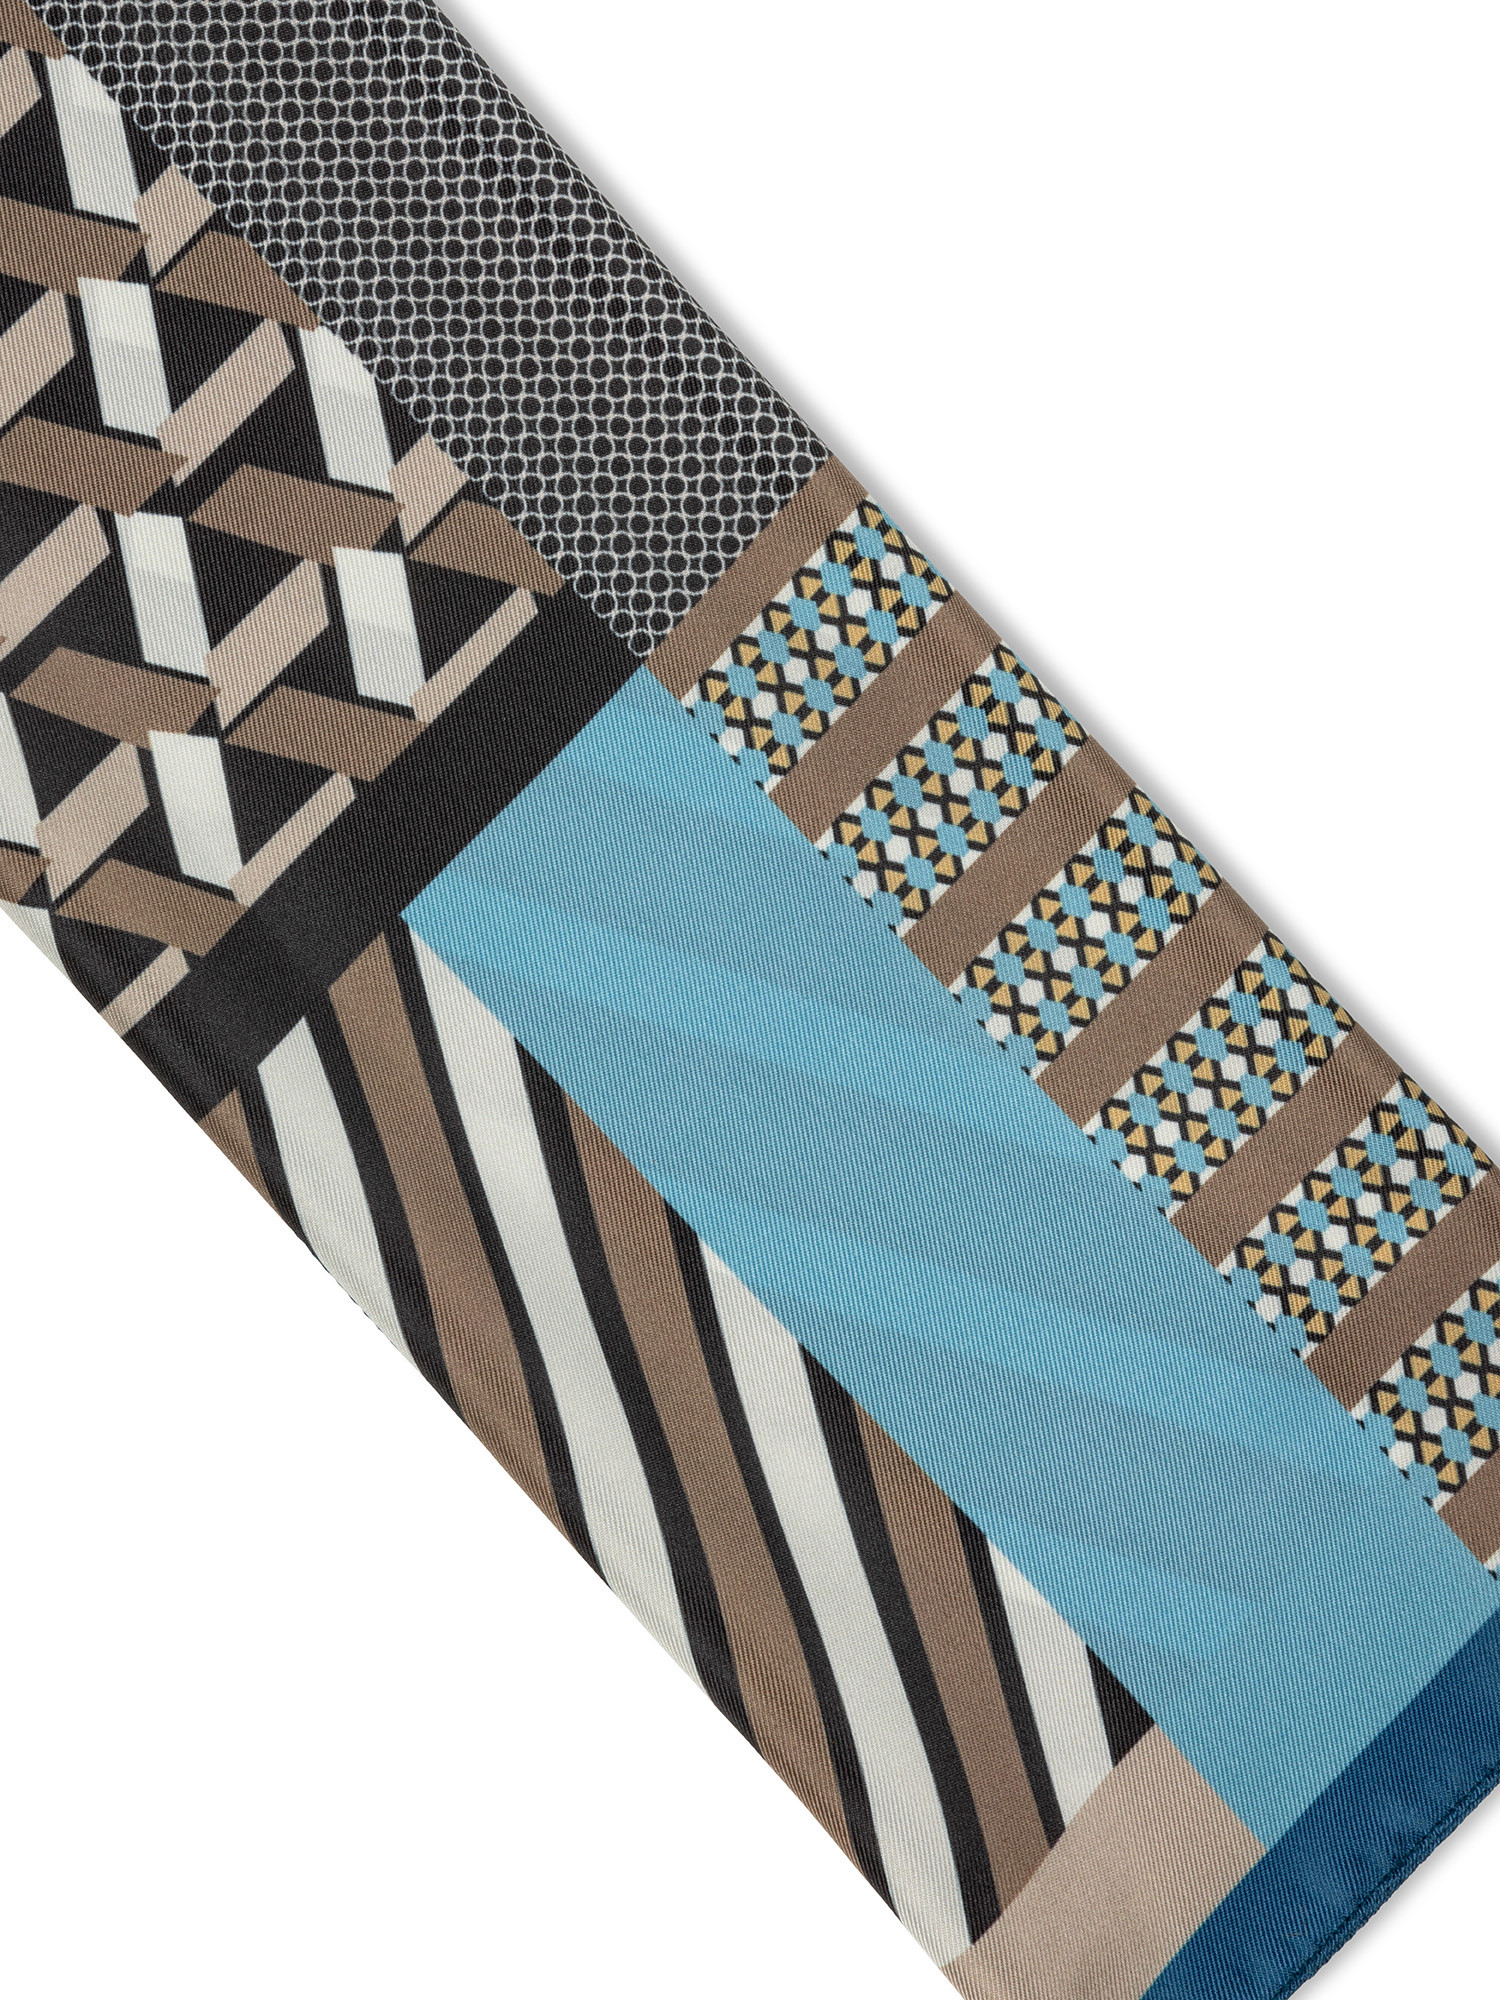 Koan - Patterned scarf, Light Blue, large image number 1